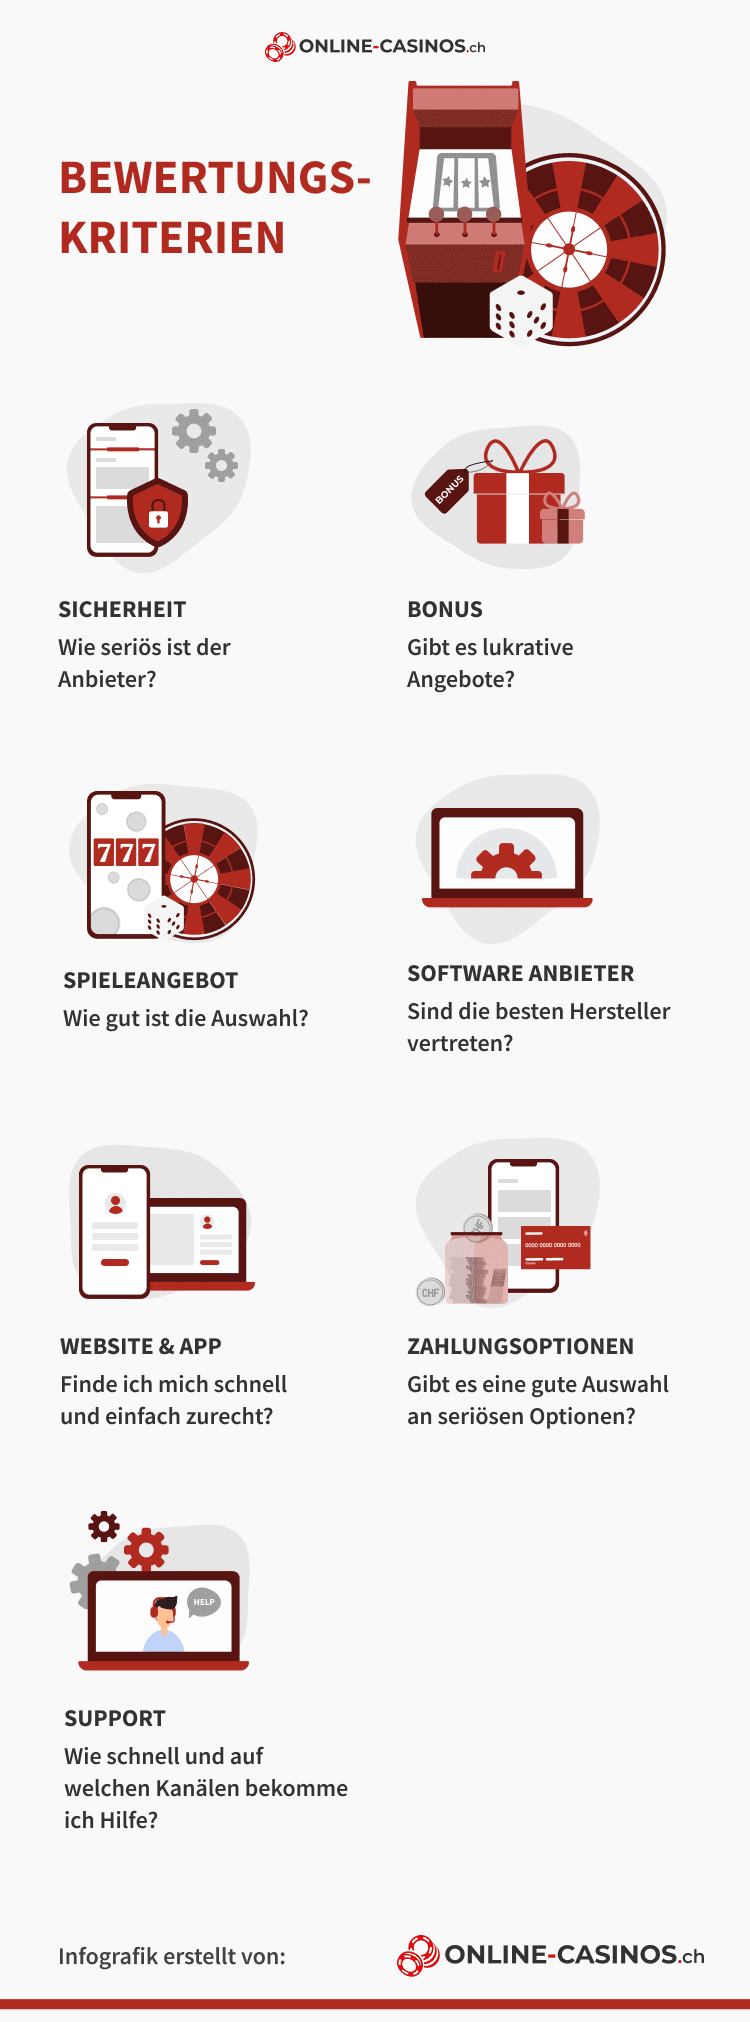 Wie Sie Ihr Produkt 2021 mit online casinos in österreich hervorheben können